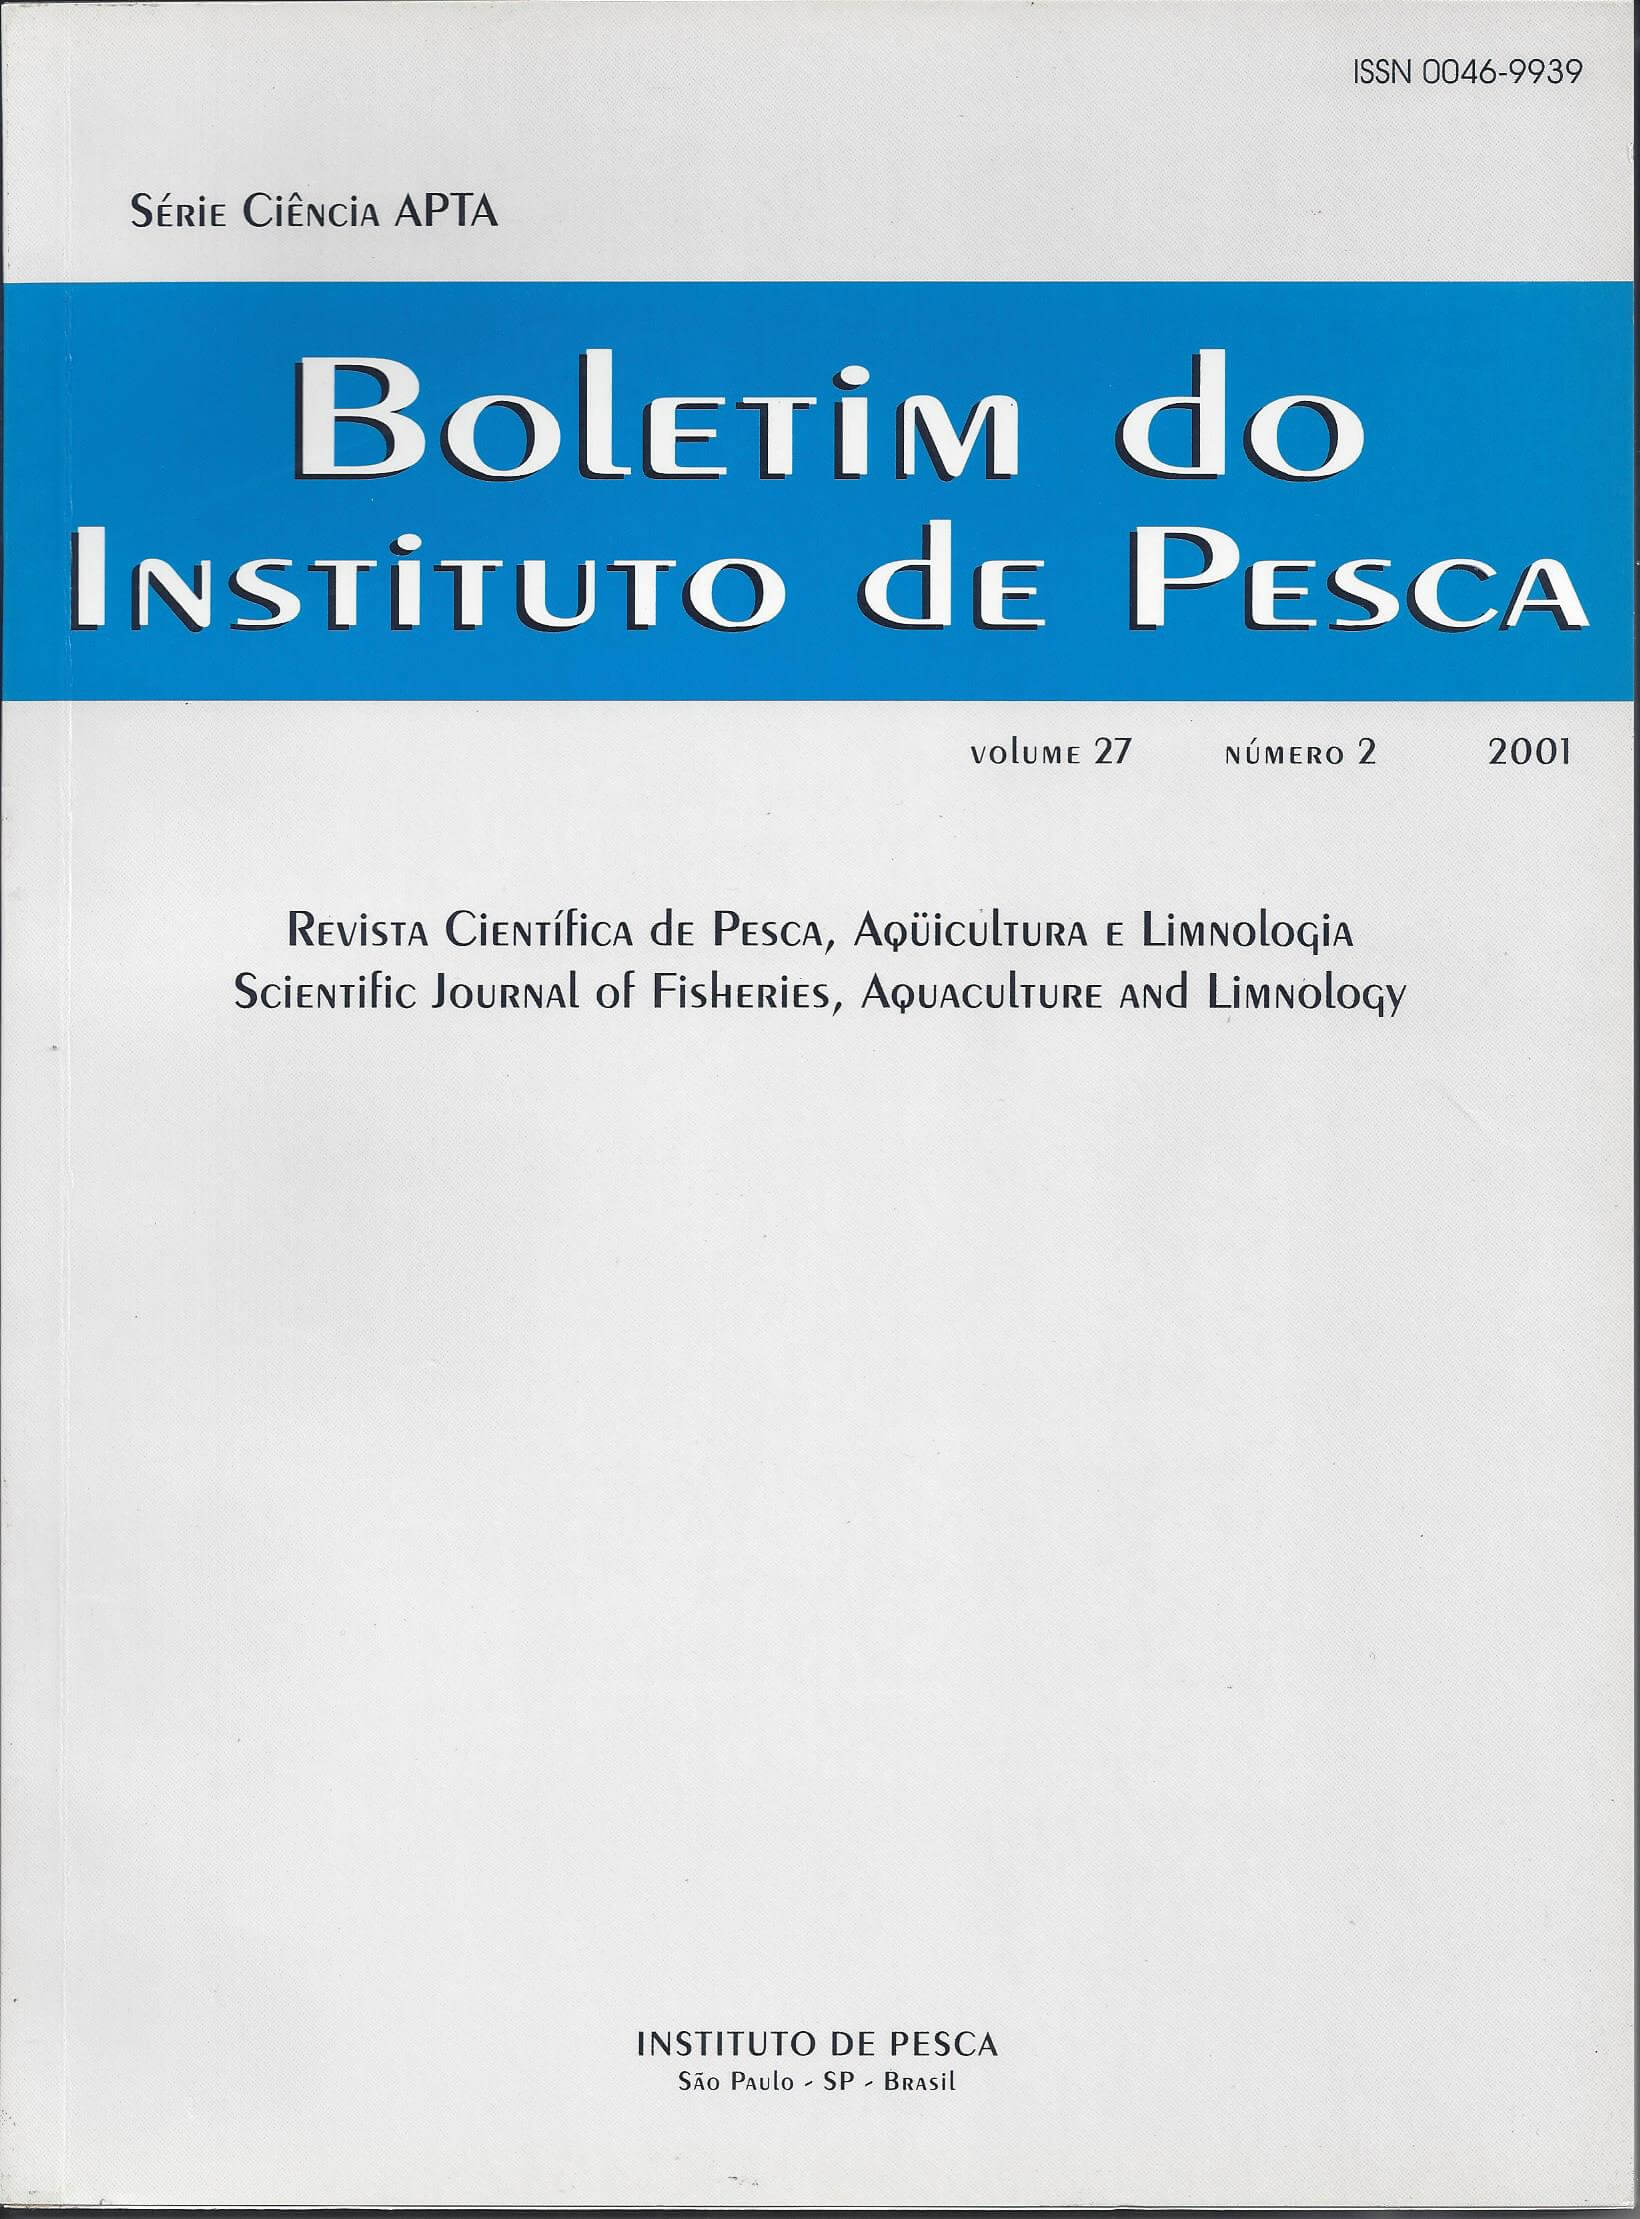 					View Vol. 27 No. 2 (2001): BOLETIM DO INSTITUTO DE PESCA
				